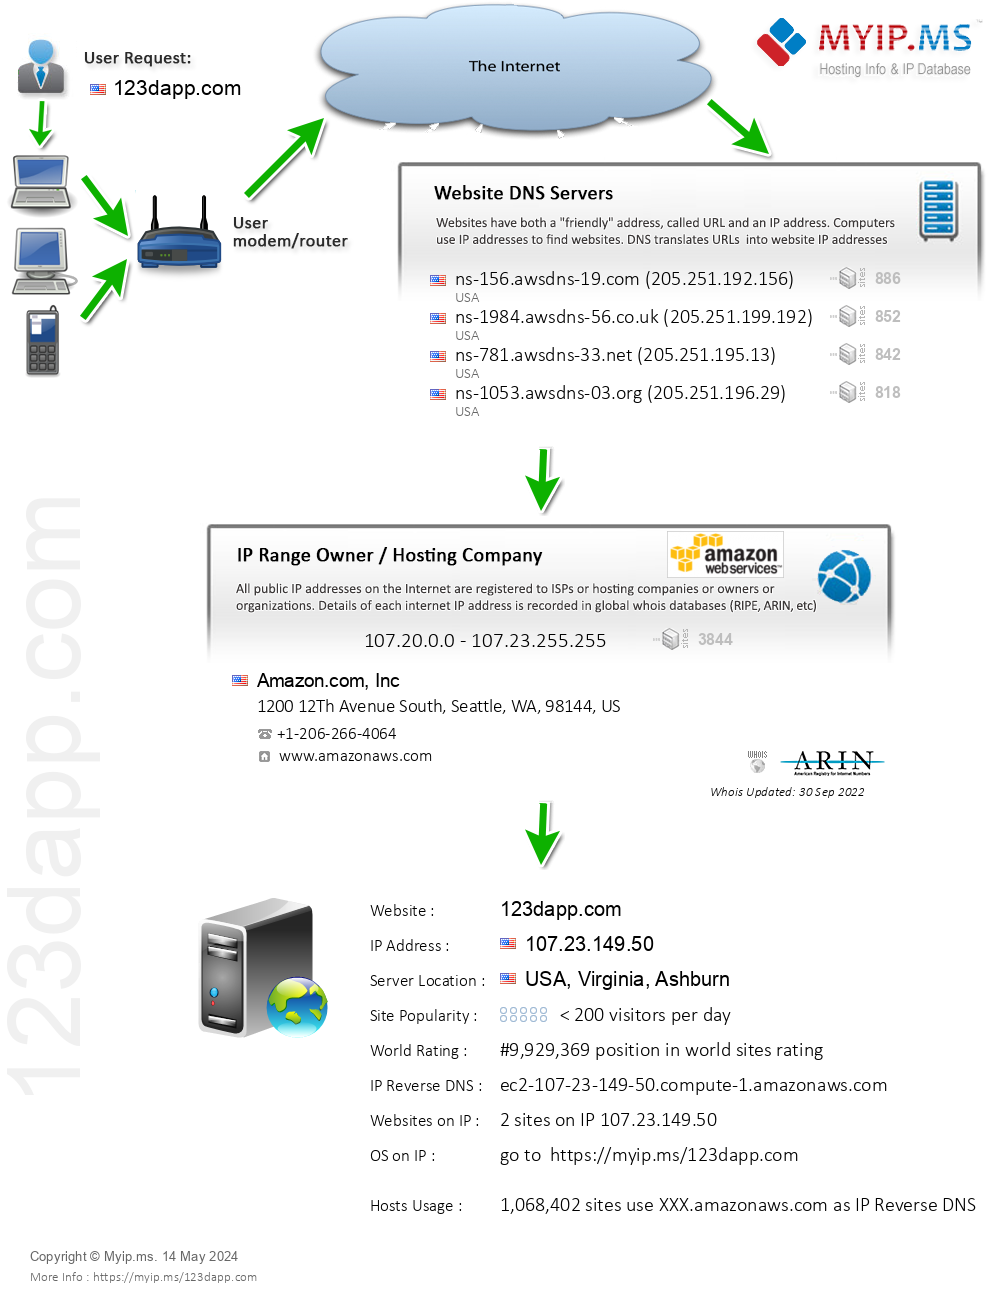 123dapp.com - Website Hosting Visual IP Diagram